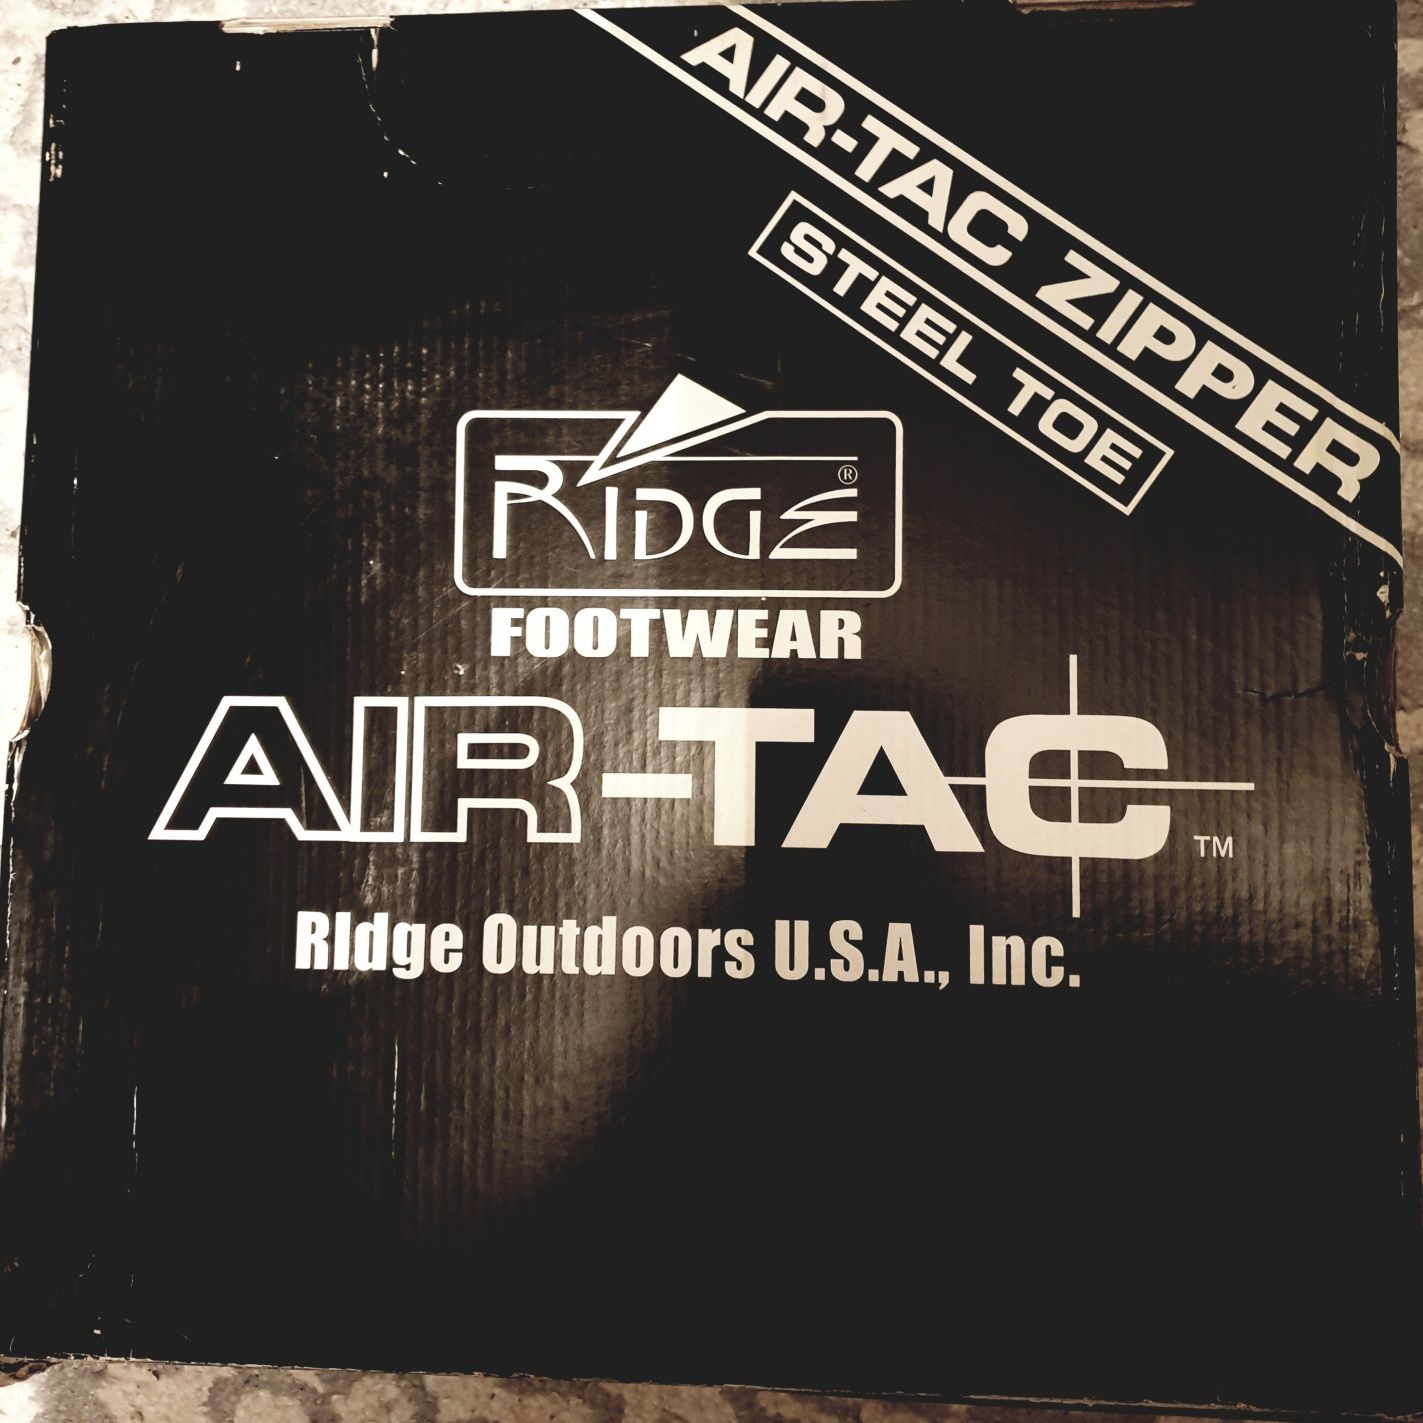 Ghete tactice Ridge Air-Tac